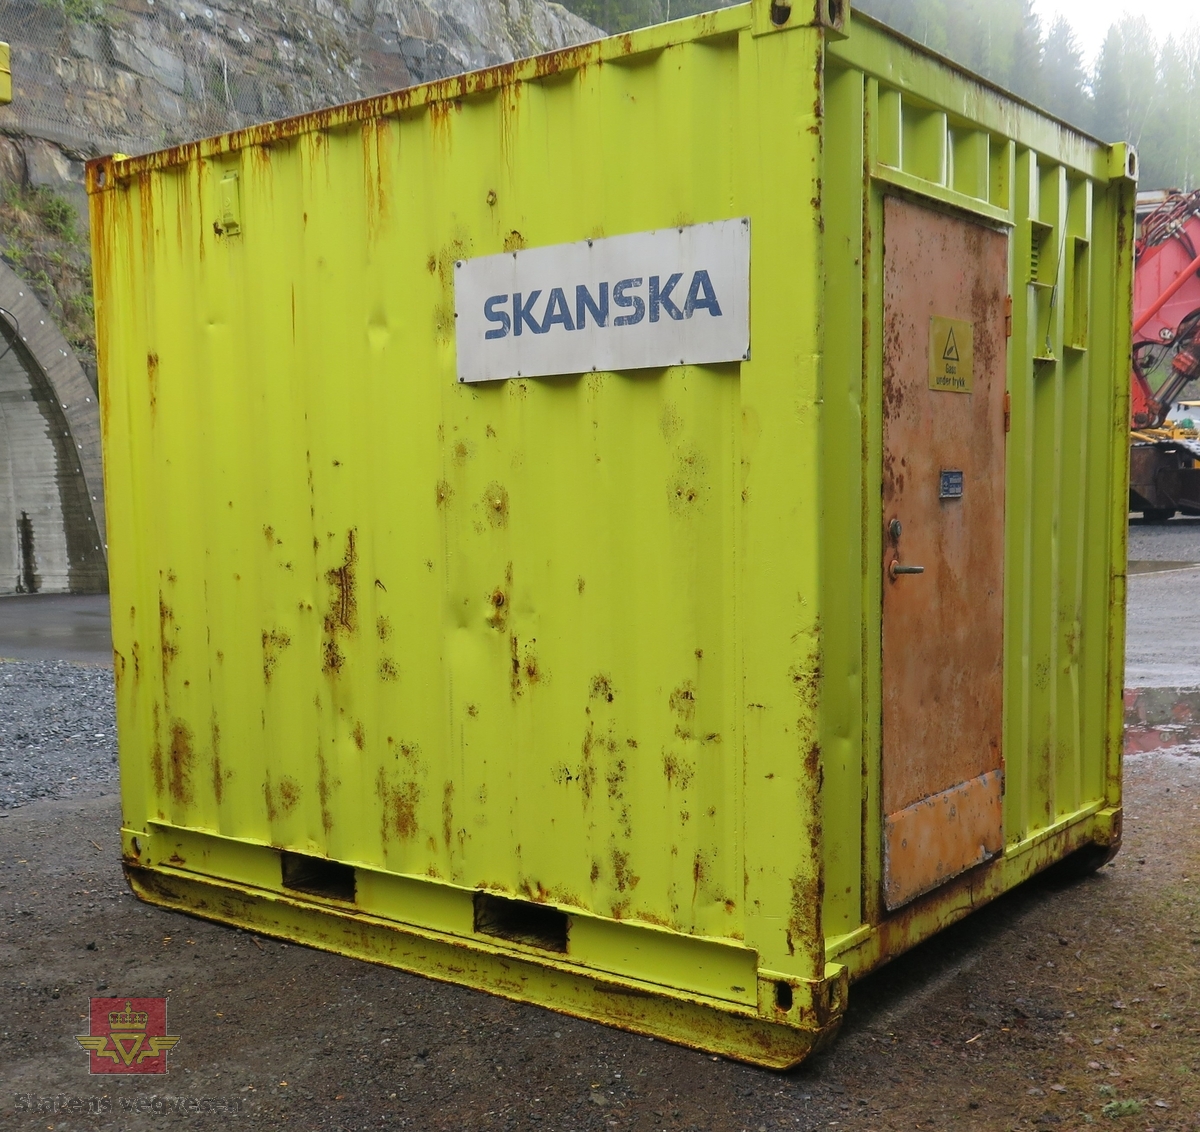 Grønn container. I containeren skal det være surstoff, førstehjelpsutstyr og vann.